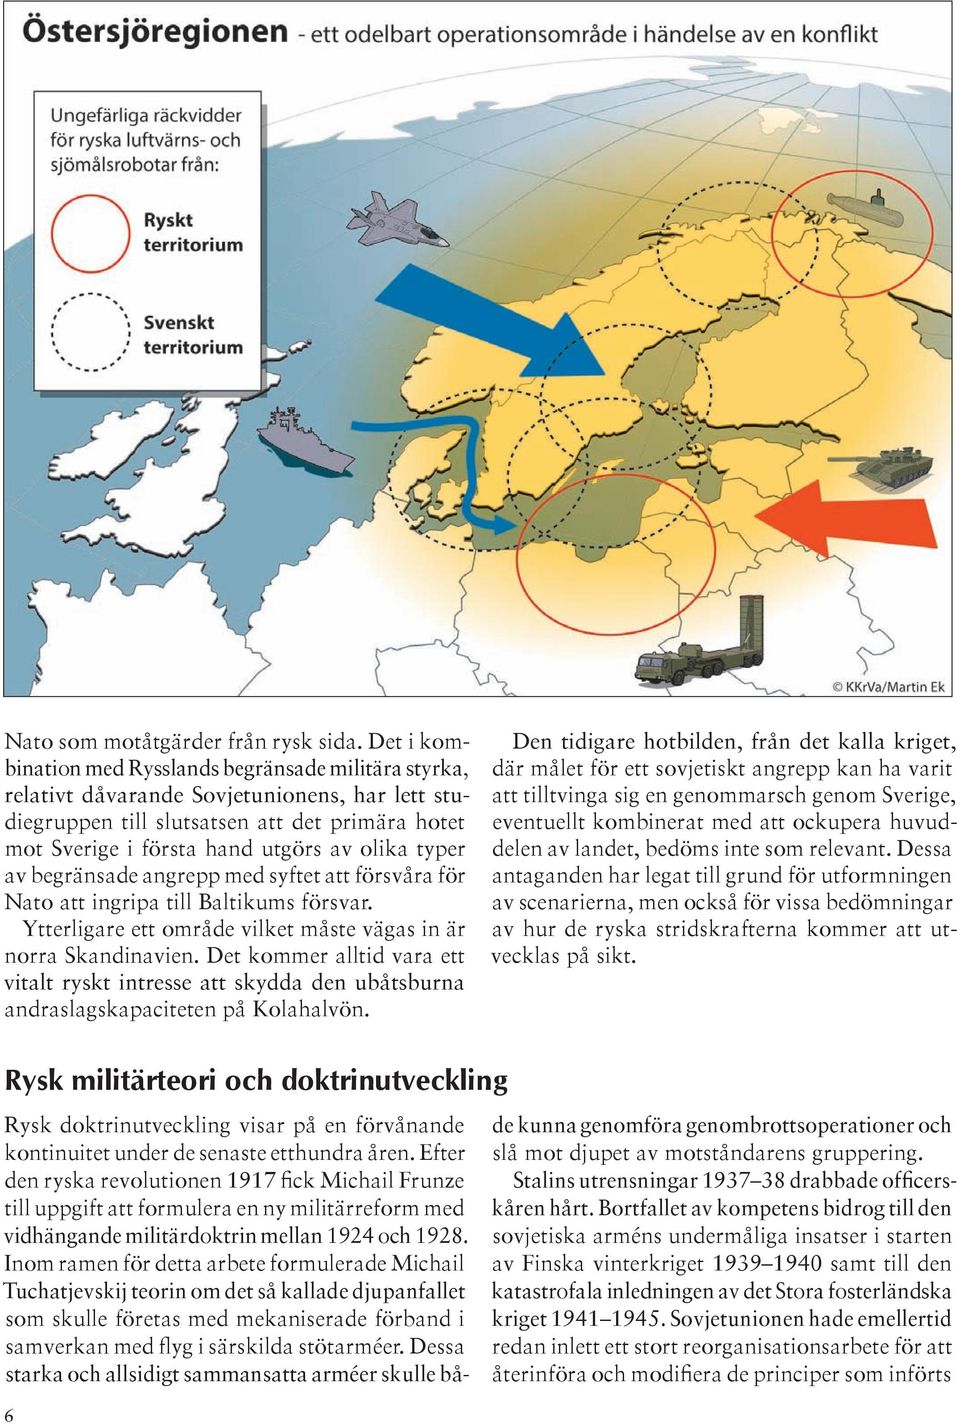 typer av begränsade angrepp med syftet att försvåra för Nato att ingripa till Baltikums försvar. Ytterligare ett område vilket måste vägas in är norra Skandinavien.